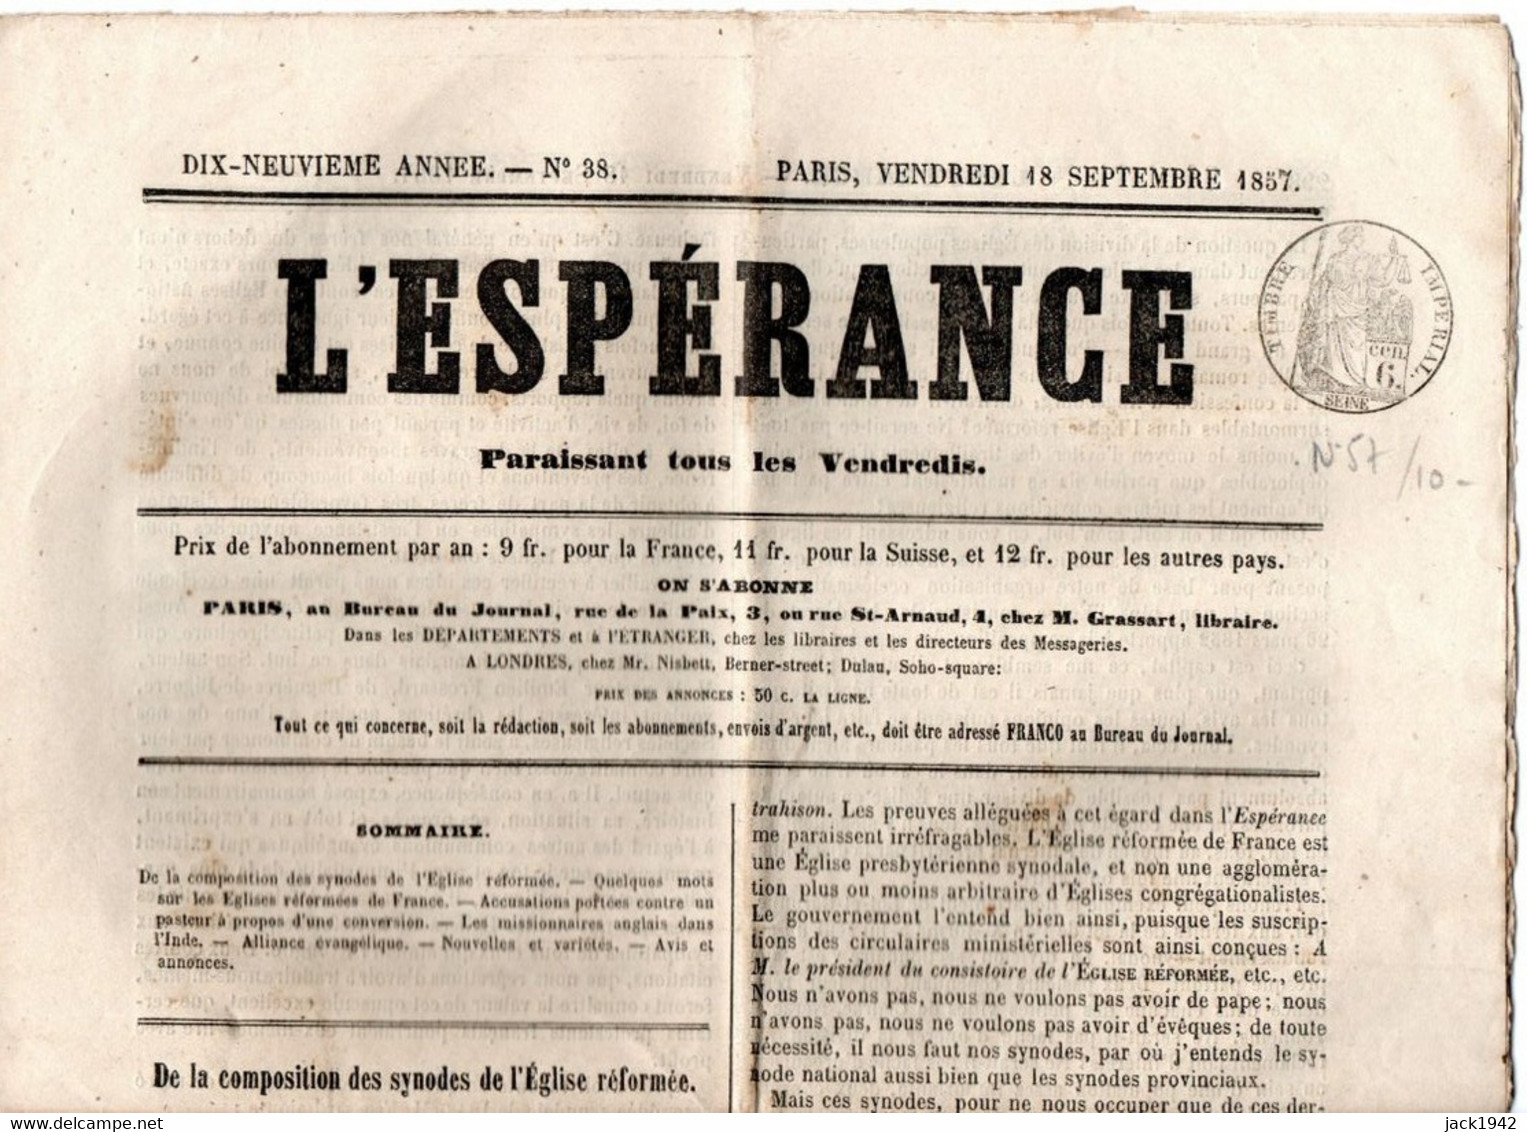 Journal L'Espérance Du 18 Septembre 1857, Avec Timbre Humide " Timbre / Impérial 6 Centimes" - Journaux